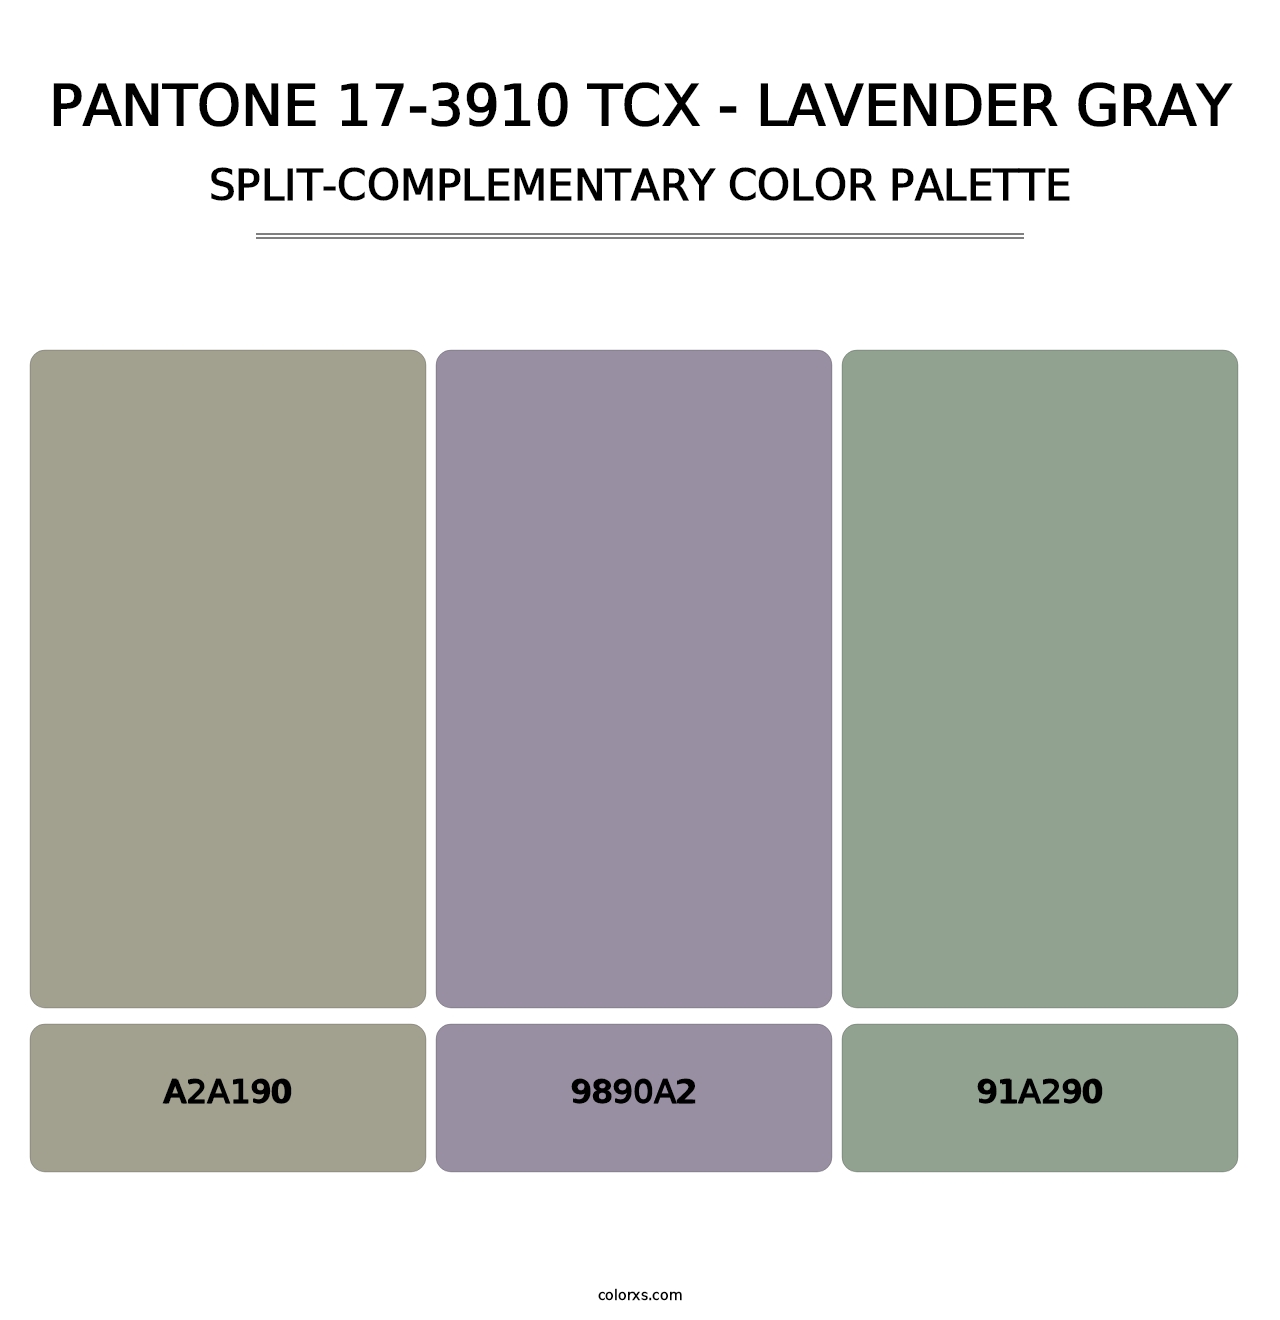 PANTONE 17-3910 TCX - Lavender Gray - Split-Complementary Color Palette